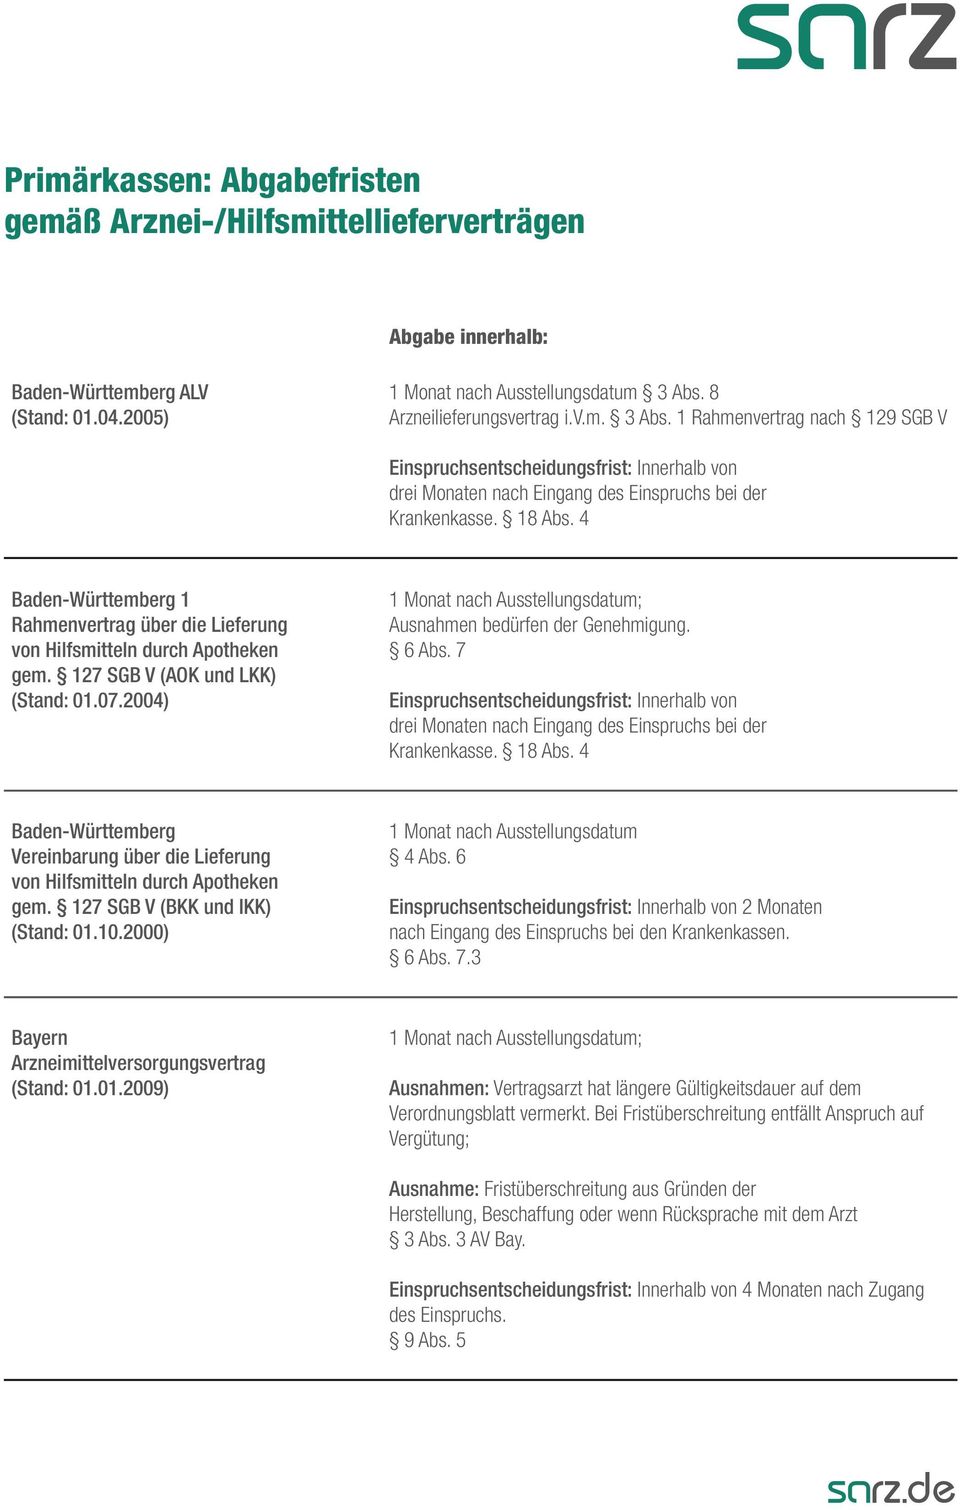 4 Baden-Württemberg 1 Rahmenvertrag über die Lieferung von Hilfsmitteln durch Apotheken gem. 127 SGB V (AOK und LKK) (Stand: 01.07.2004) ; Ausnahmen bedürfen der Genehmigung. 6 Abs.